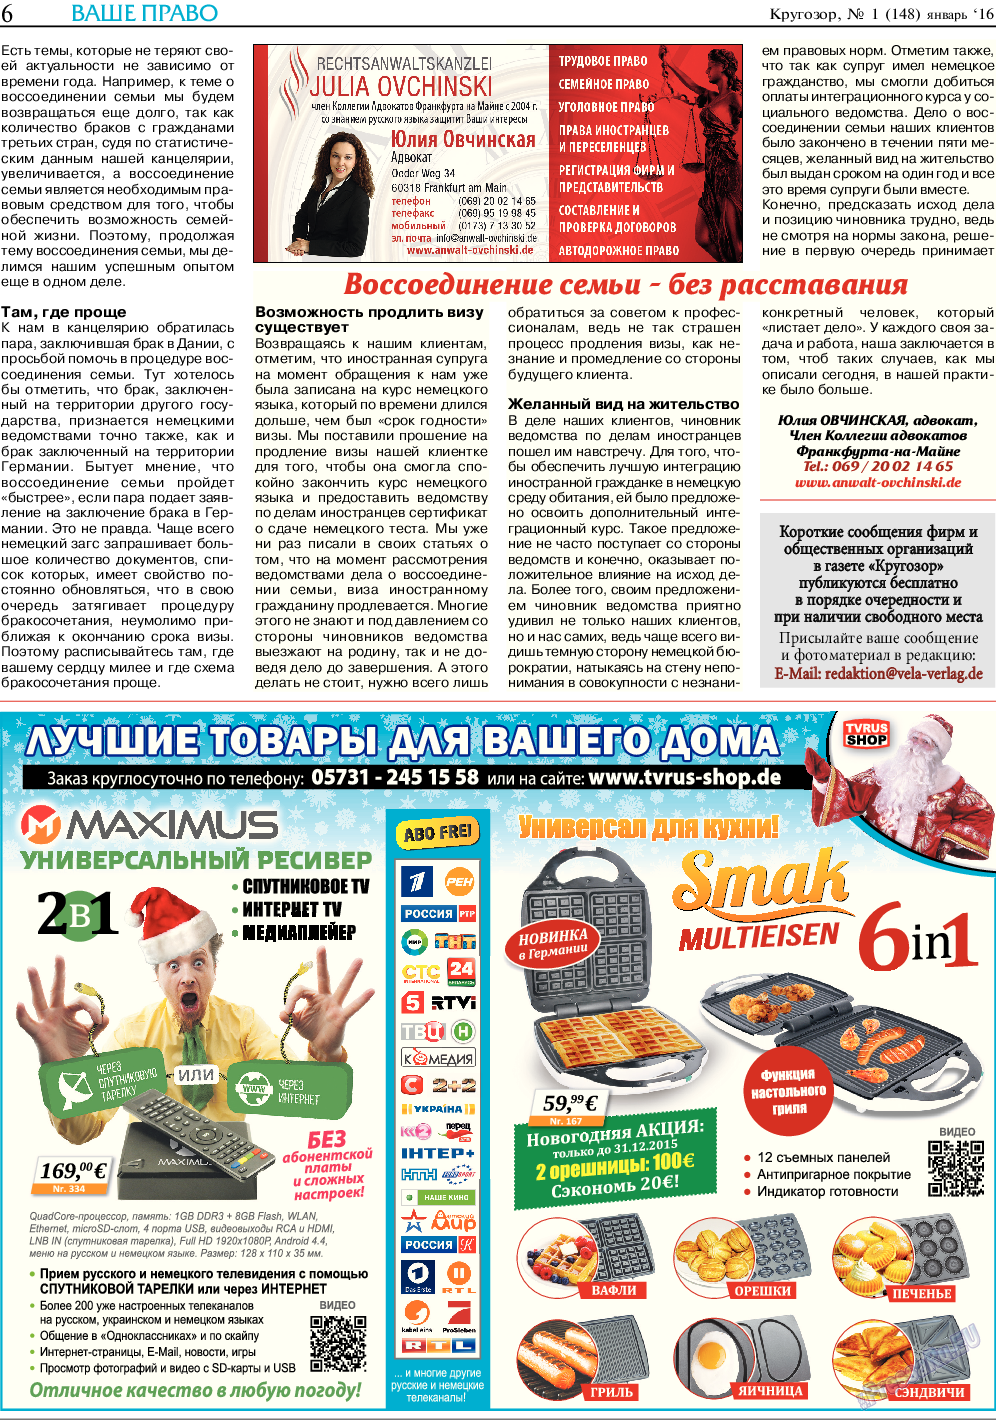 Кругозор, газета. 2016 №1 стр.6